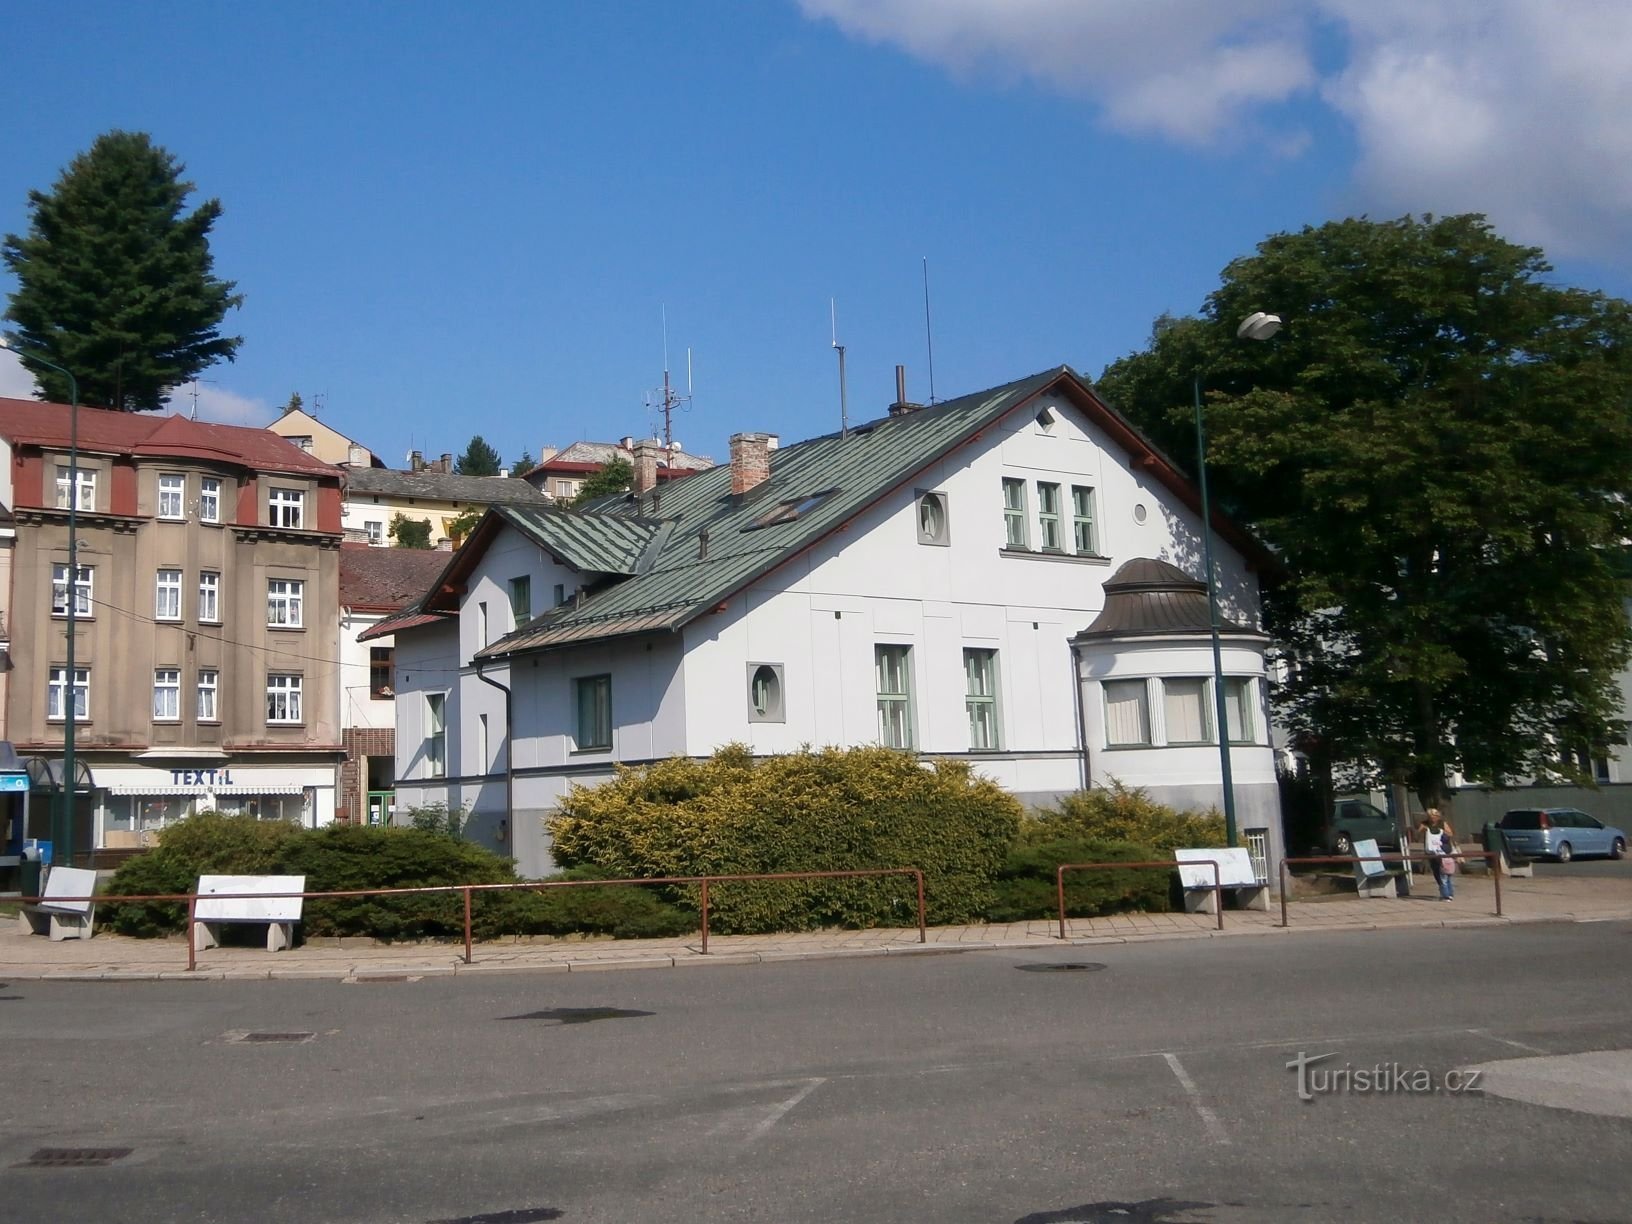 Čaps tidligere villa med busstoppested (Úpice, 6.7.2017. juli XNUMX)